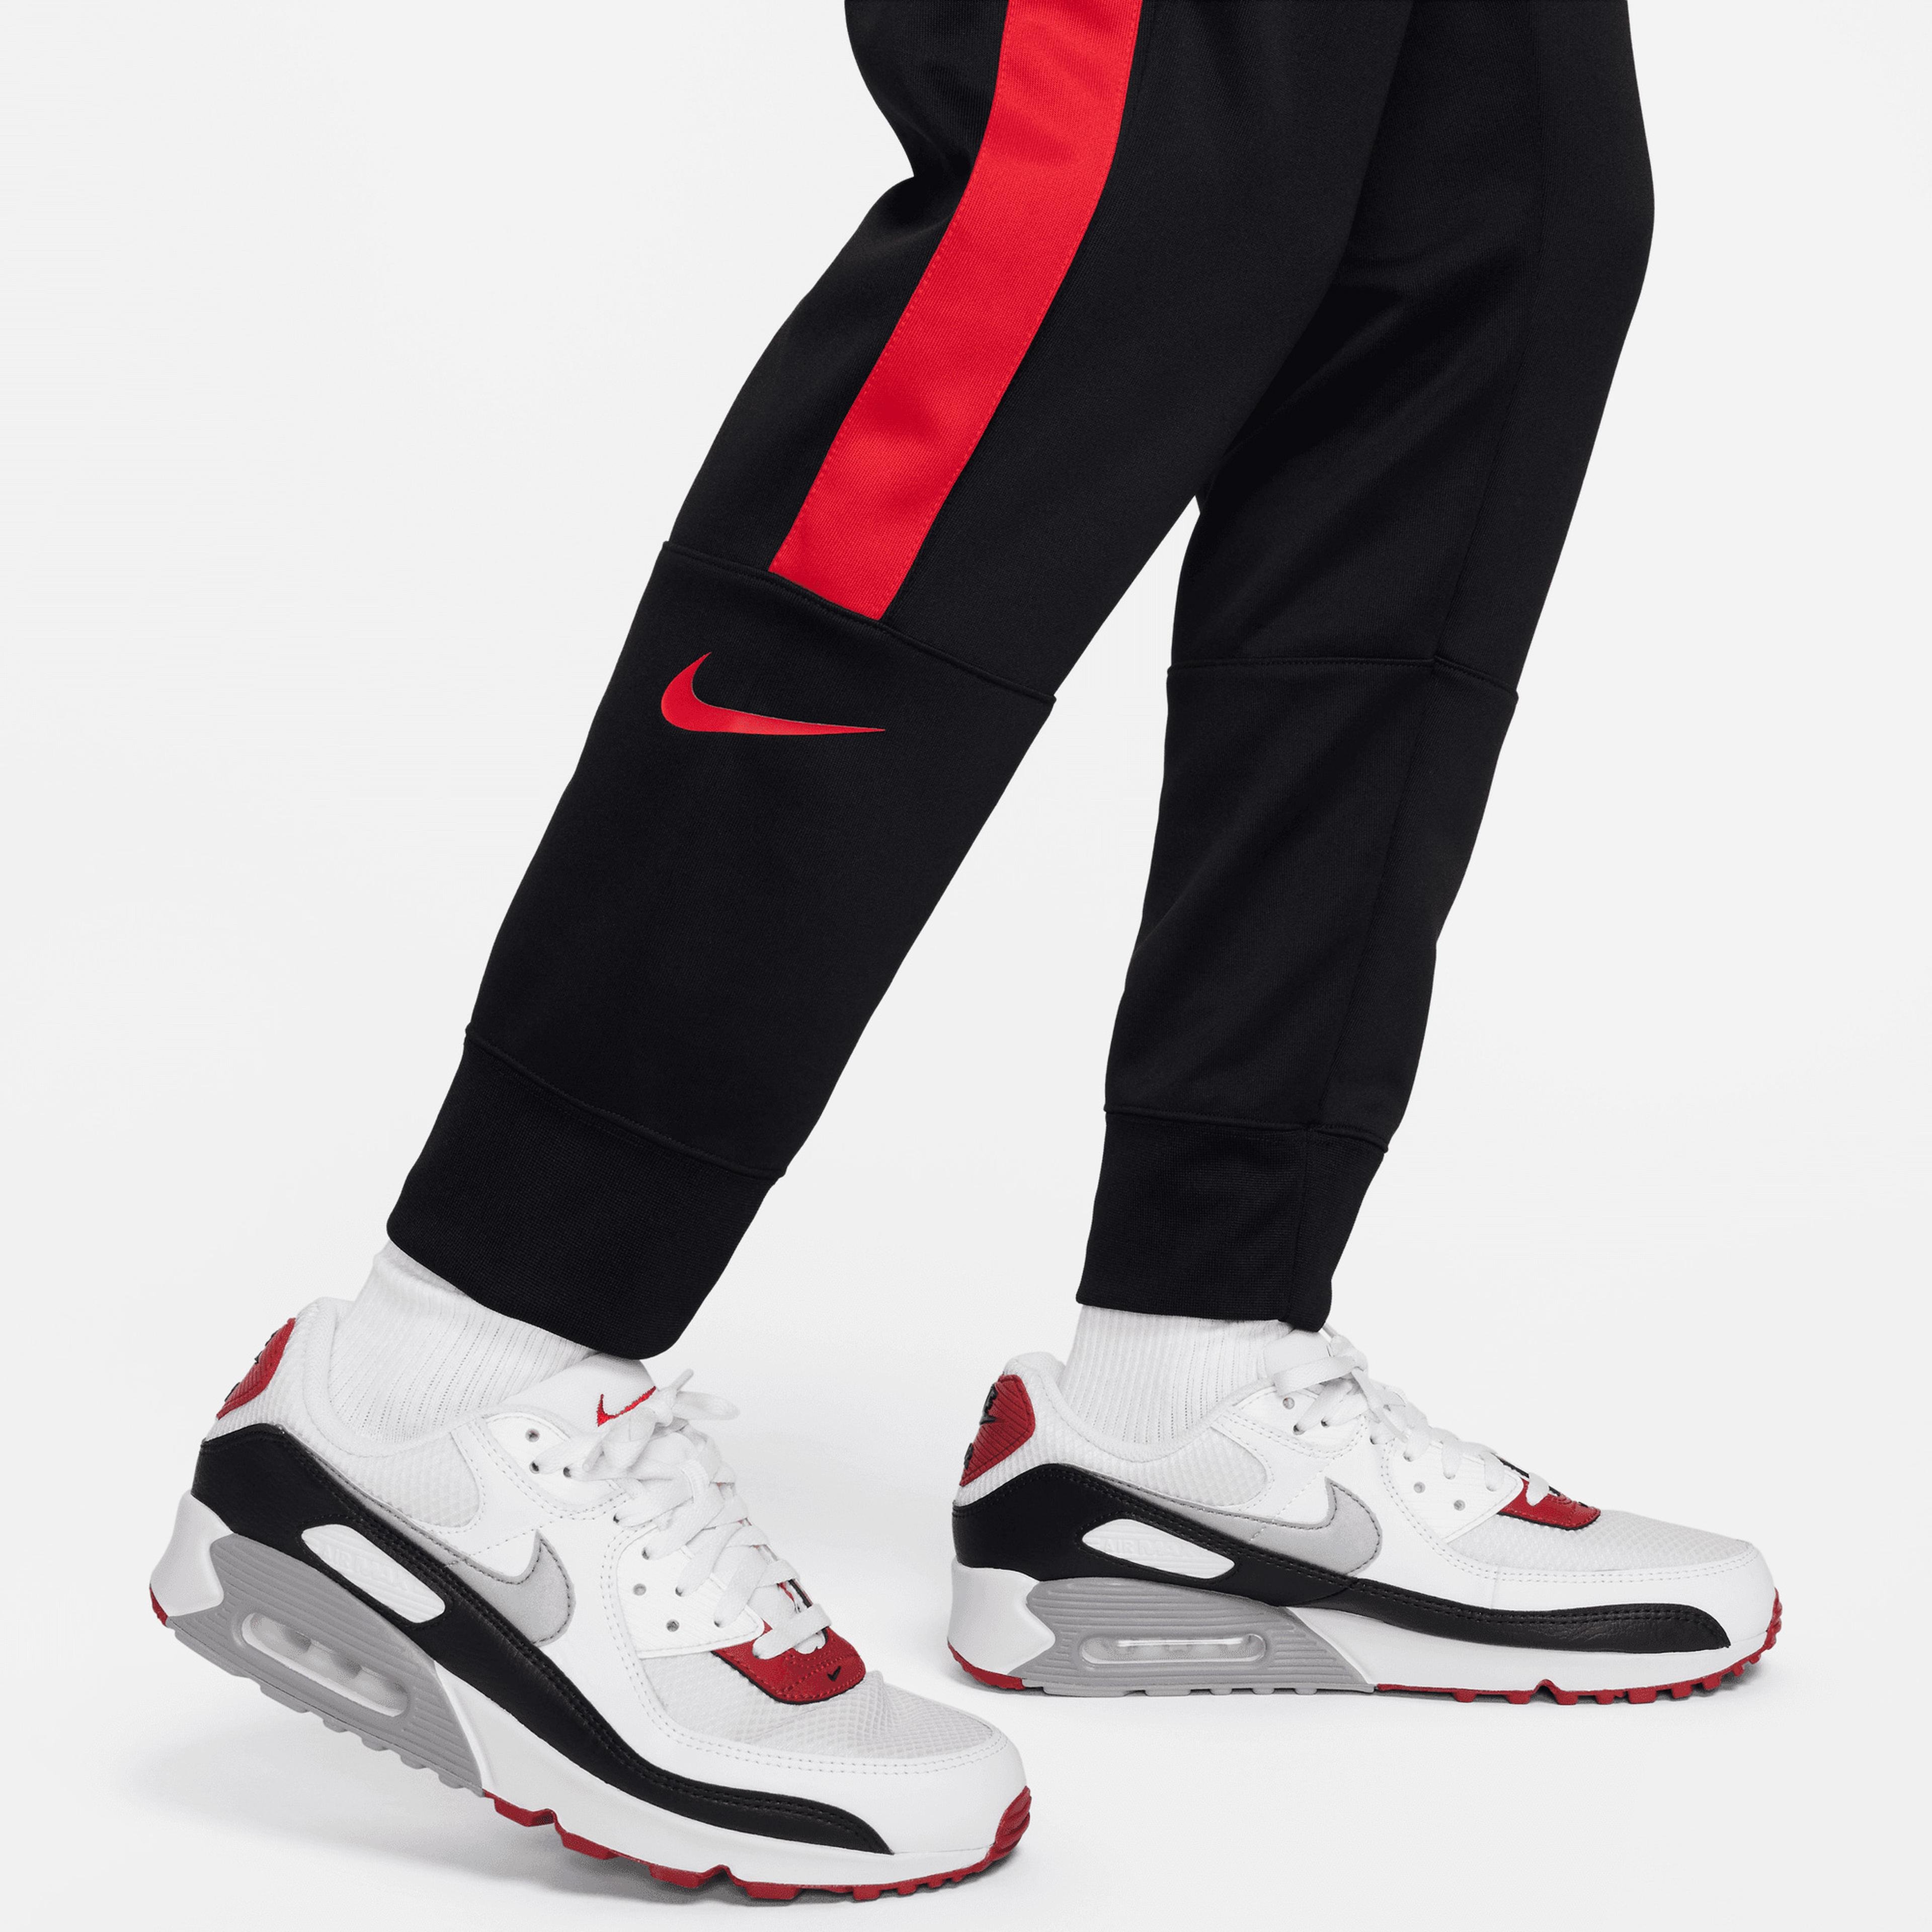 Nike Air Sportswear Erkek Siyah Eşofman Altı